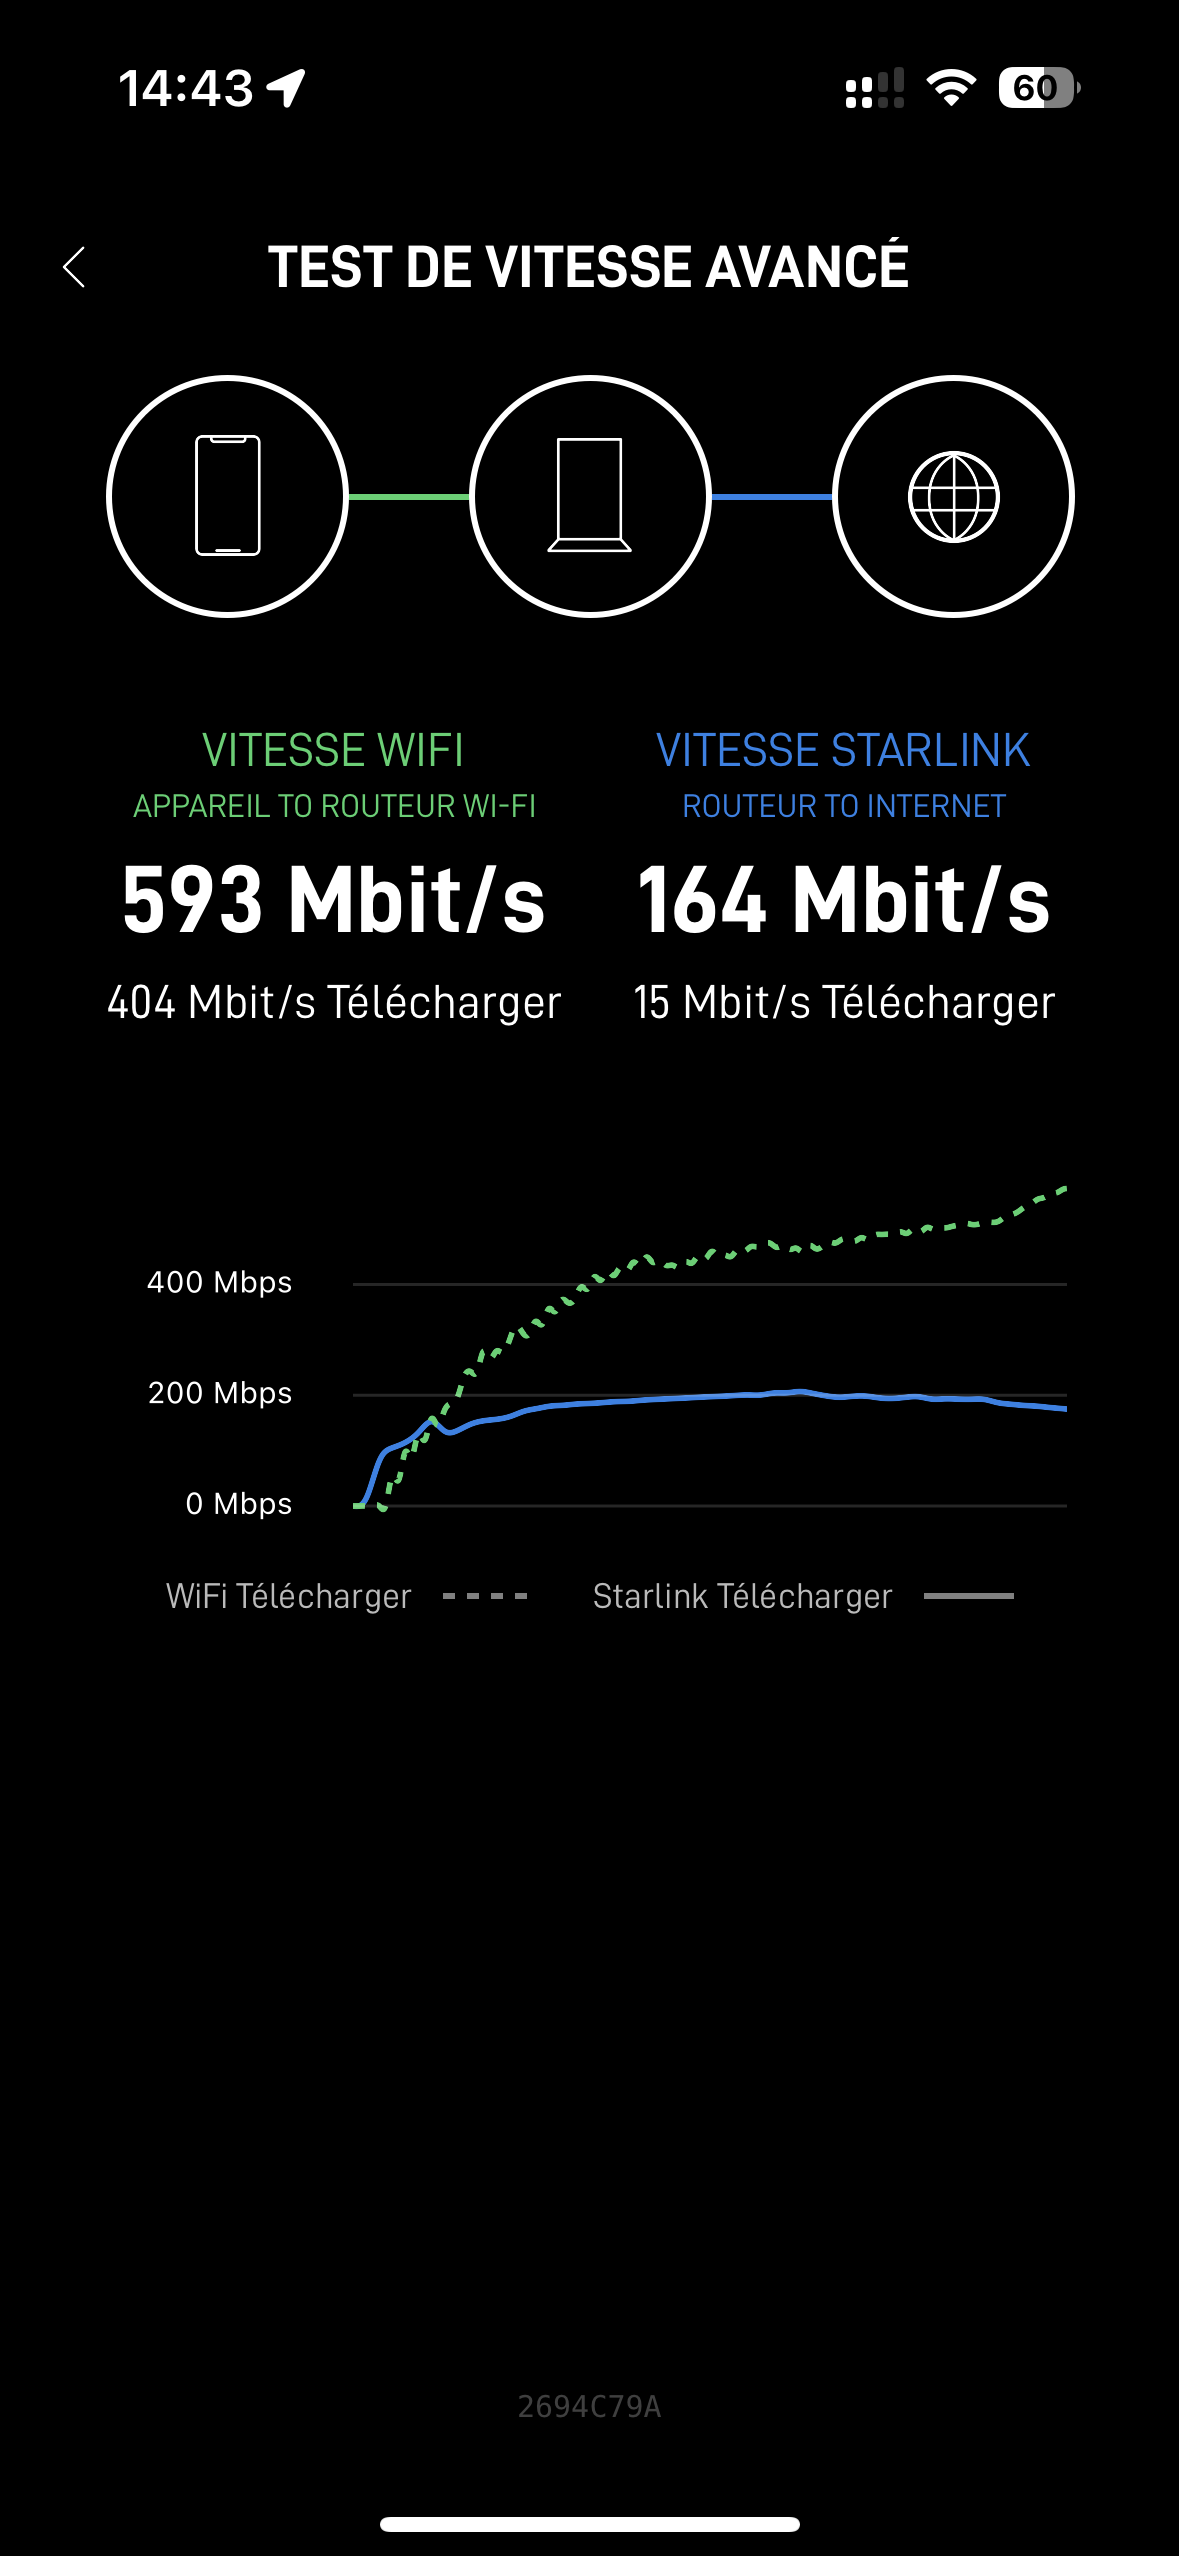 On a testé Starlink, l'internet haut débit par satellite d'Elon Musk